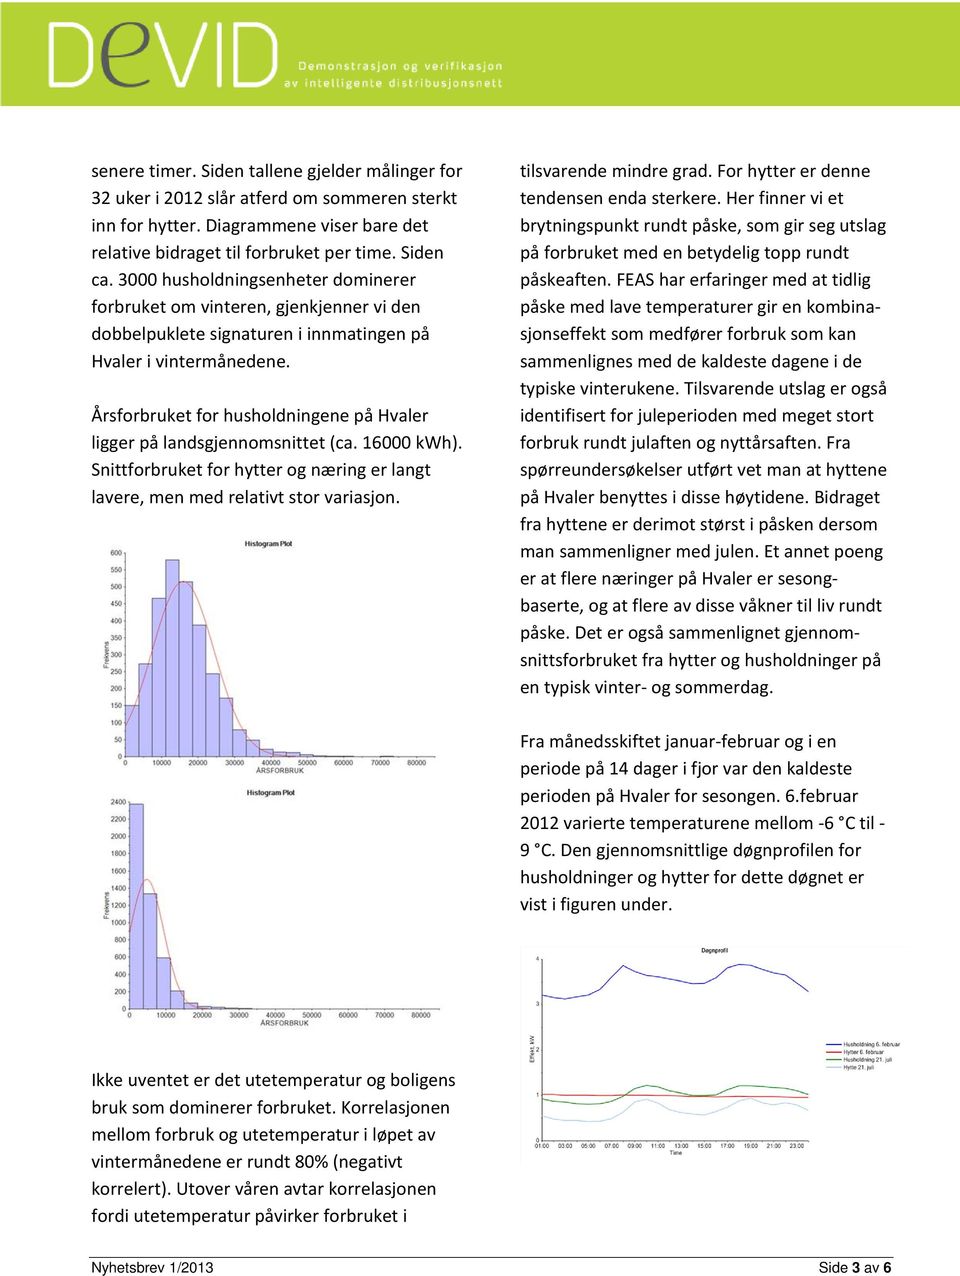 Årsforbruket for husholdningene på Hvaler ligger på landsgjennomsnittet (ca. 16000 kwh). Snittforbruket for hytter og næring er langt lavere, men med relativt stor variasjon. tilsvarende mindre grad.